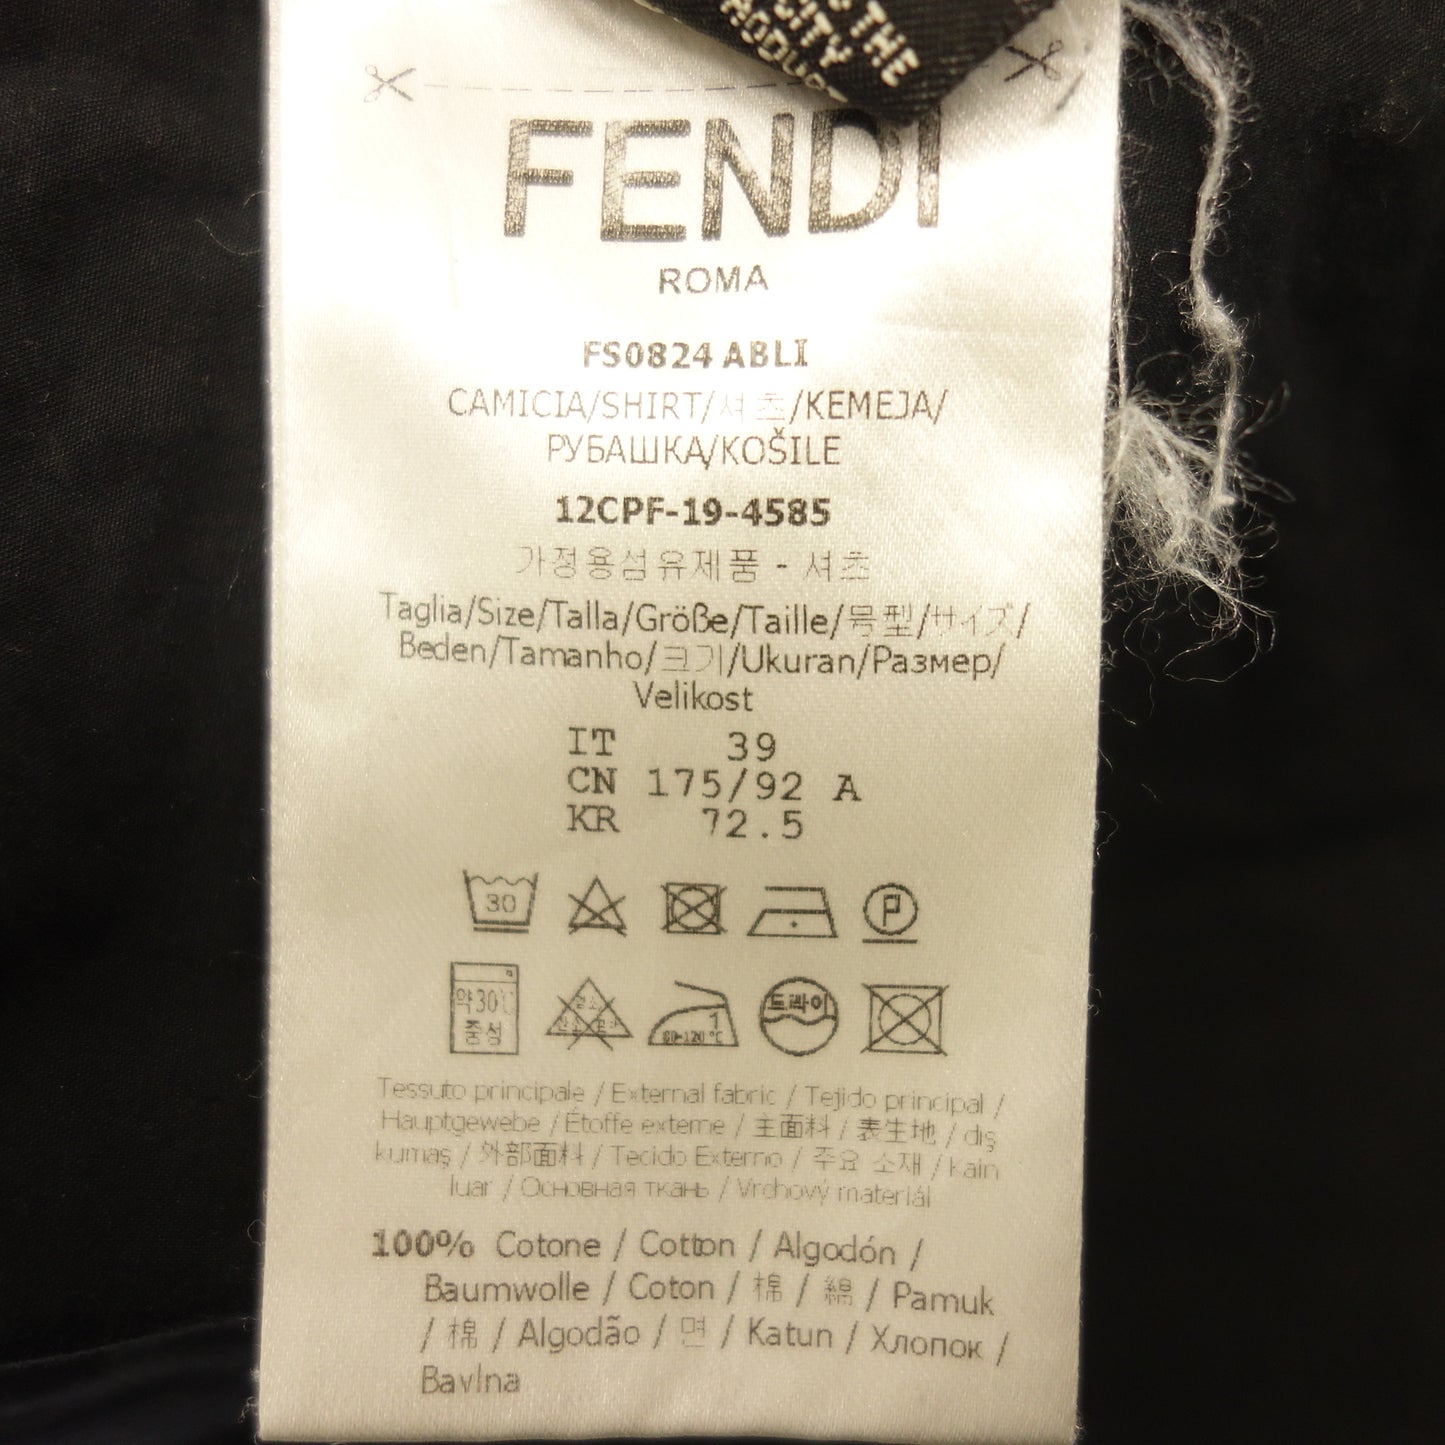 二手的◆芬迪长袖衬衫教士彩色黑色尺寸 39 男式 FENDI [AFB4] 